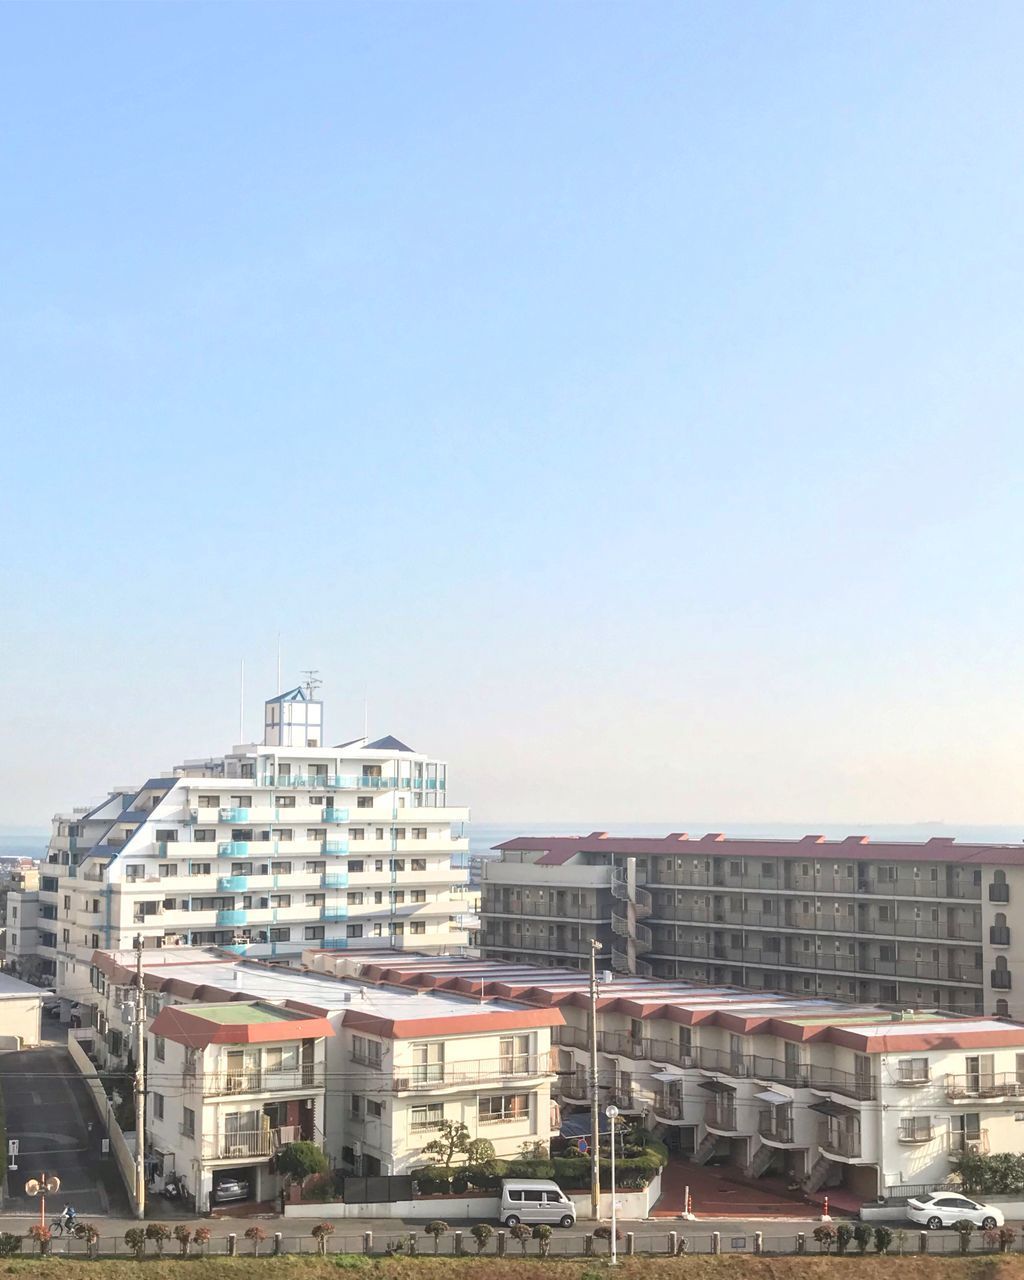 MODERN BUILDINGS AGAINST CLEAR SKY